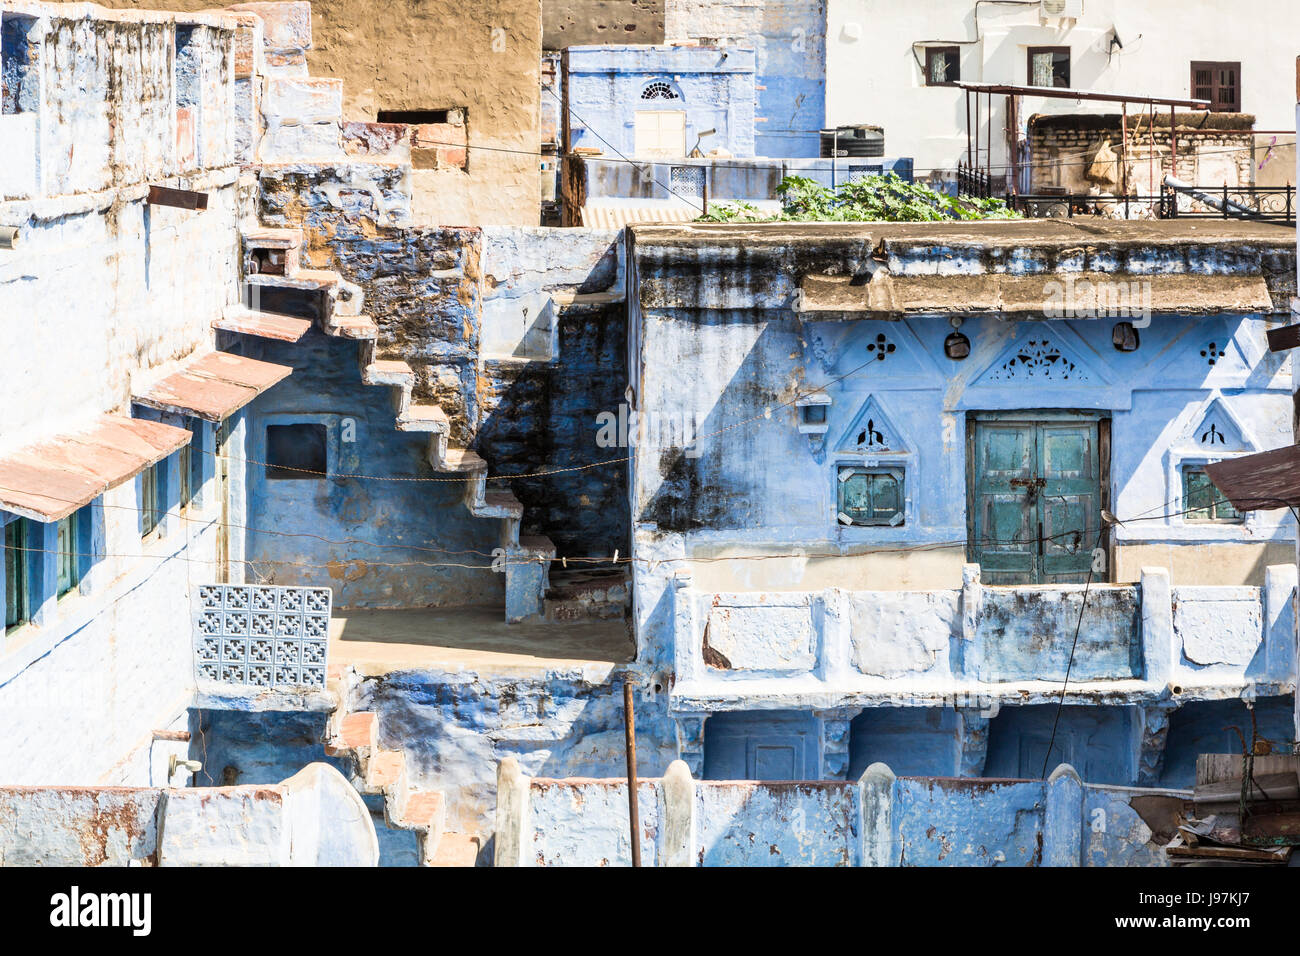 Die berühmte blaue vielbereiste Stadt in Rajasthan, Indien. Die Stadt ist berühmt dafür, dass die meisten Mauer der Altstadt in blau lackiert Stockfoto